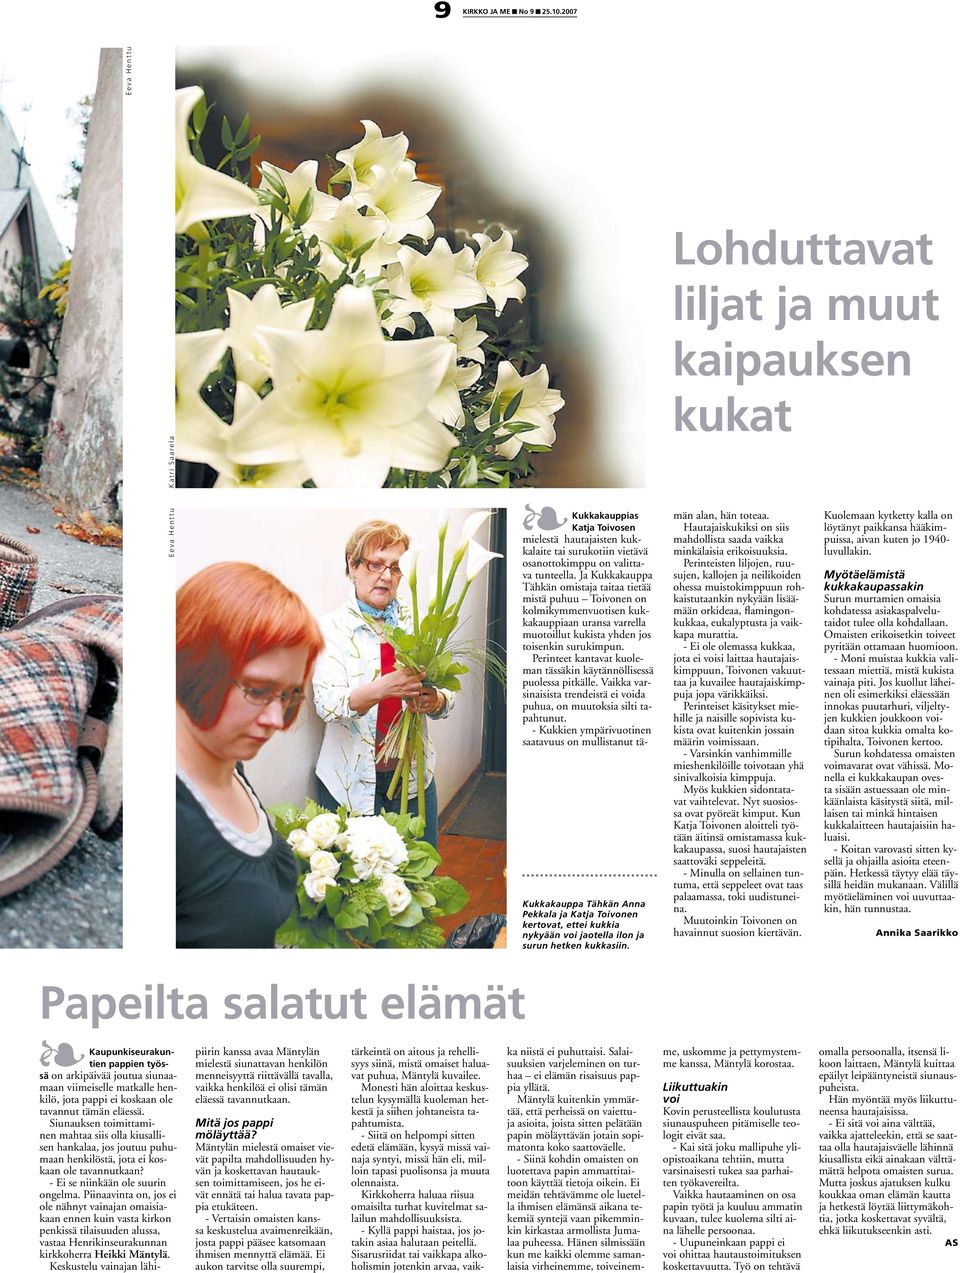 Ja Kukkakauppa Tähkän omistaja taitaa tietää mistä puhuu Toivonen on kolmikymmenvuotisen kukkakauppiaan uransa varrella muotoillut kukista yhden jos toisenkin surukimpun.